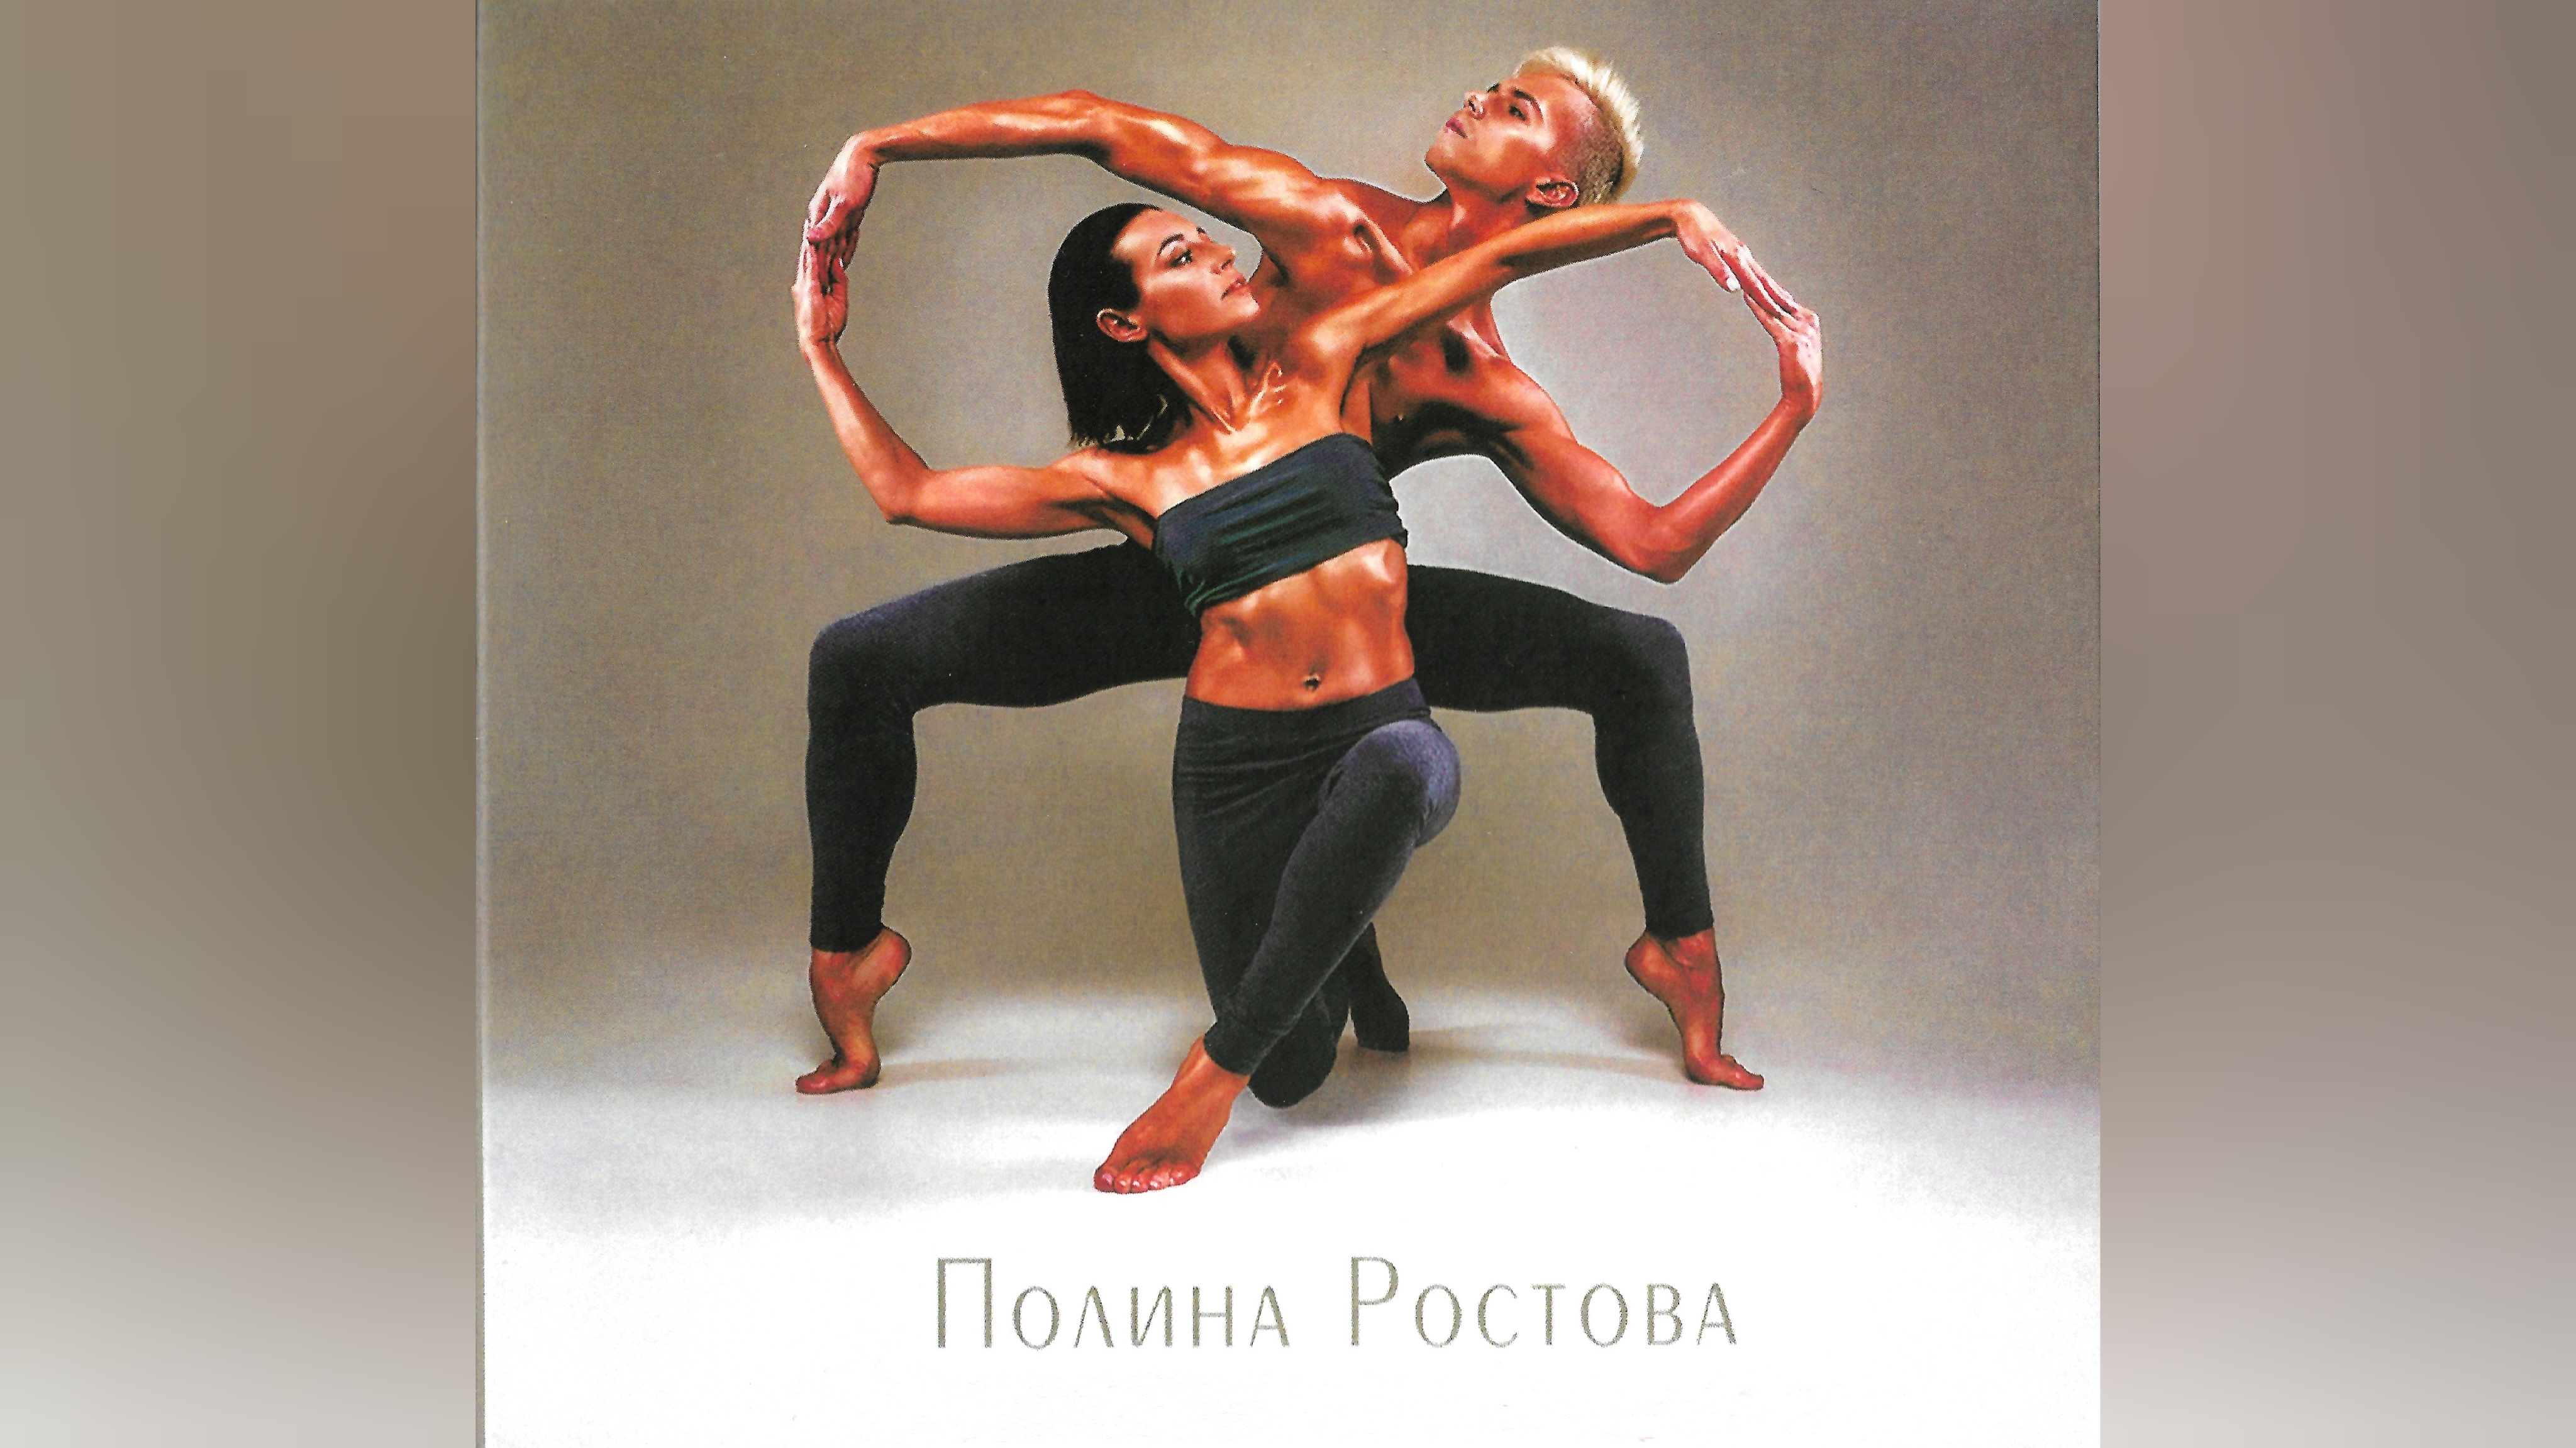 ★Полина Ростова★
«В зоне любви»
(CD / Album)